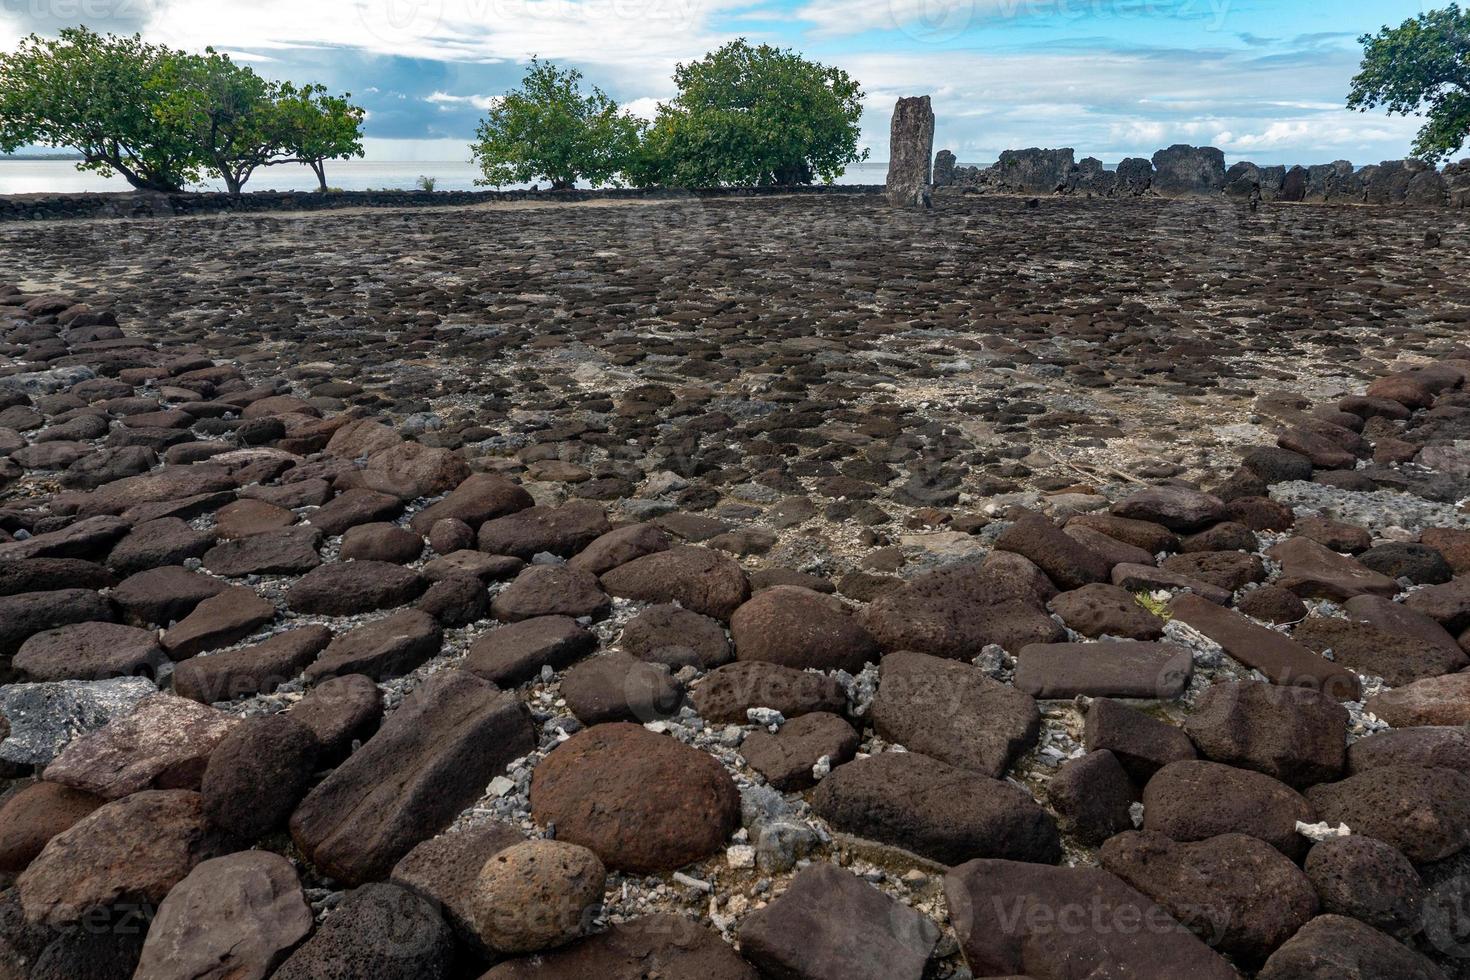 taputapuatea marae de raiatea polinesia francesa sitio arqueológico de la unesco foto